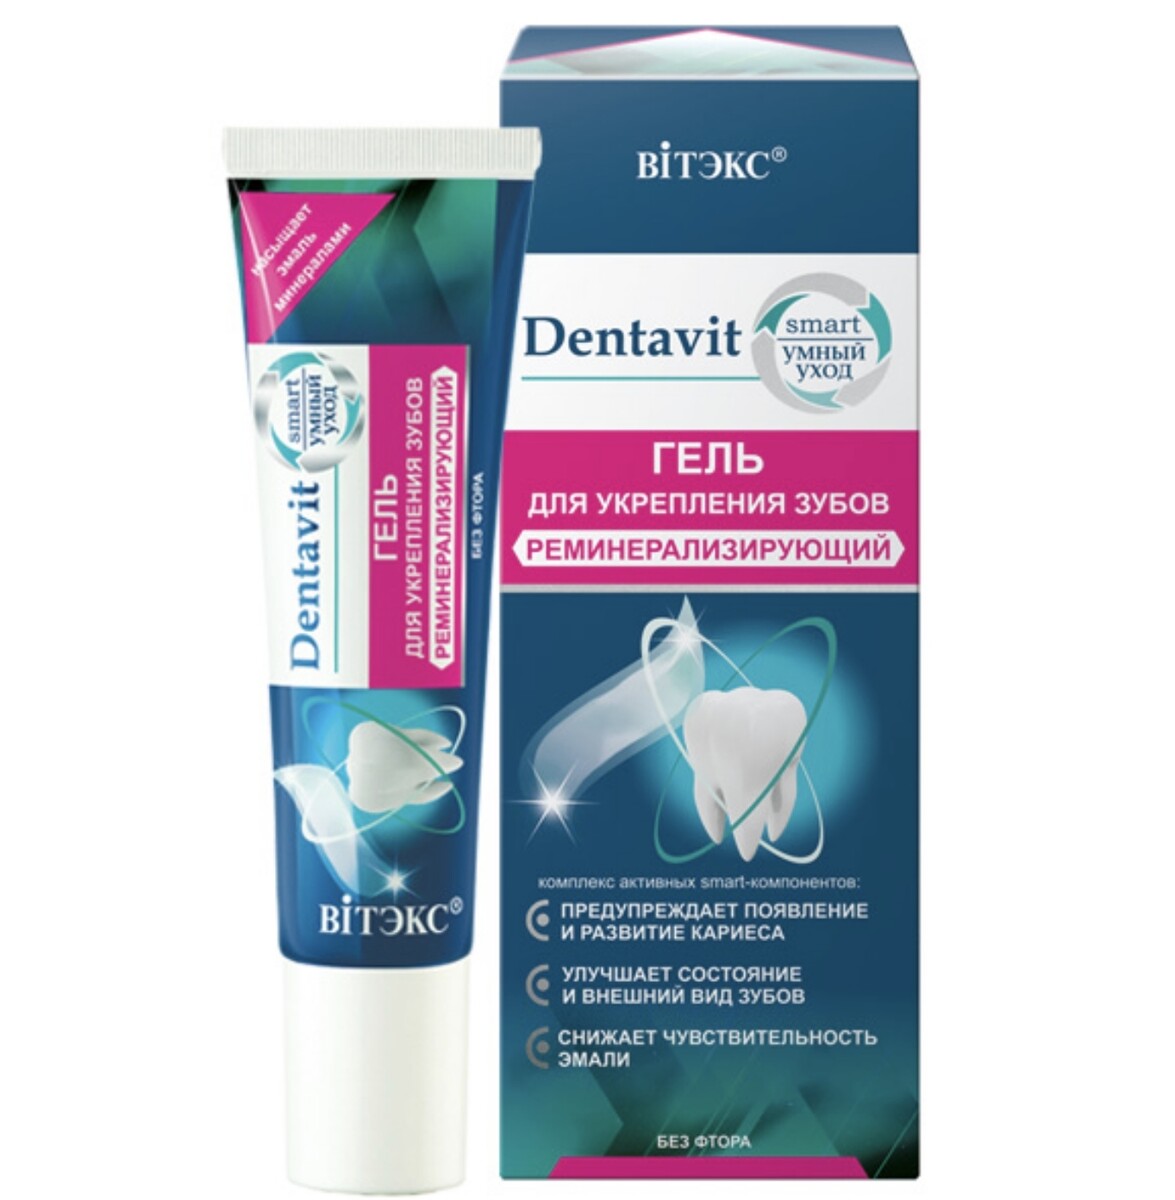 Dentavit-smart гель для укрепления зубов реминерализирующий (без фтора) 30г (без коробки) камистад бэби гель при прорезывании зубов туба 10г